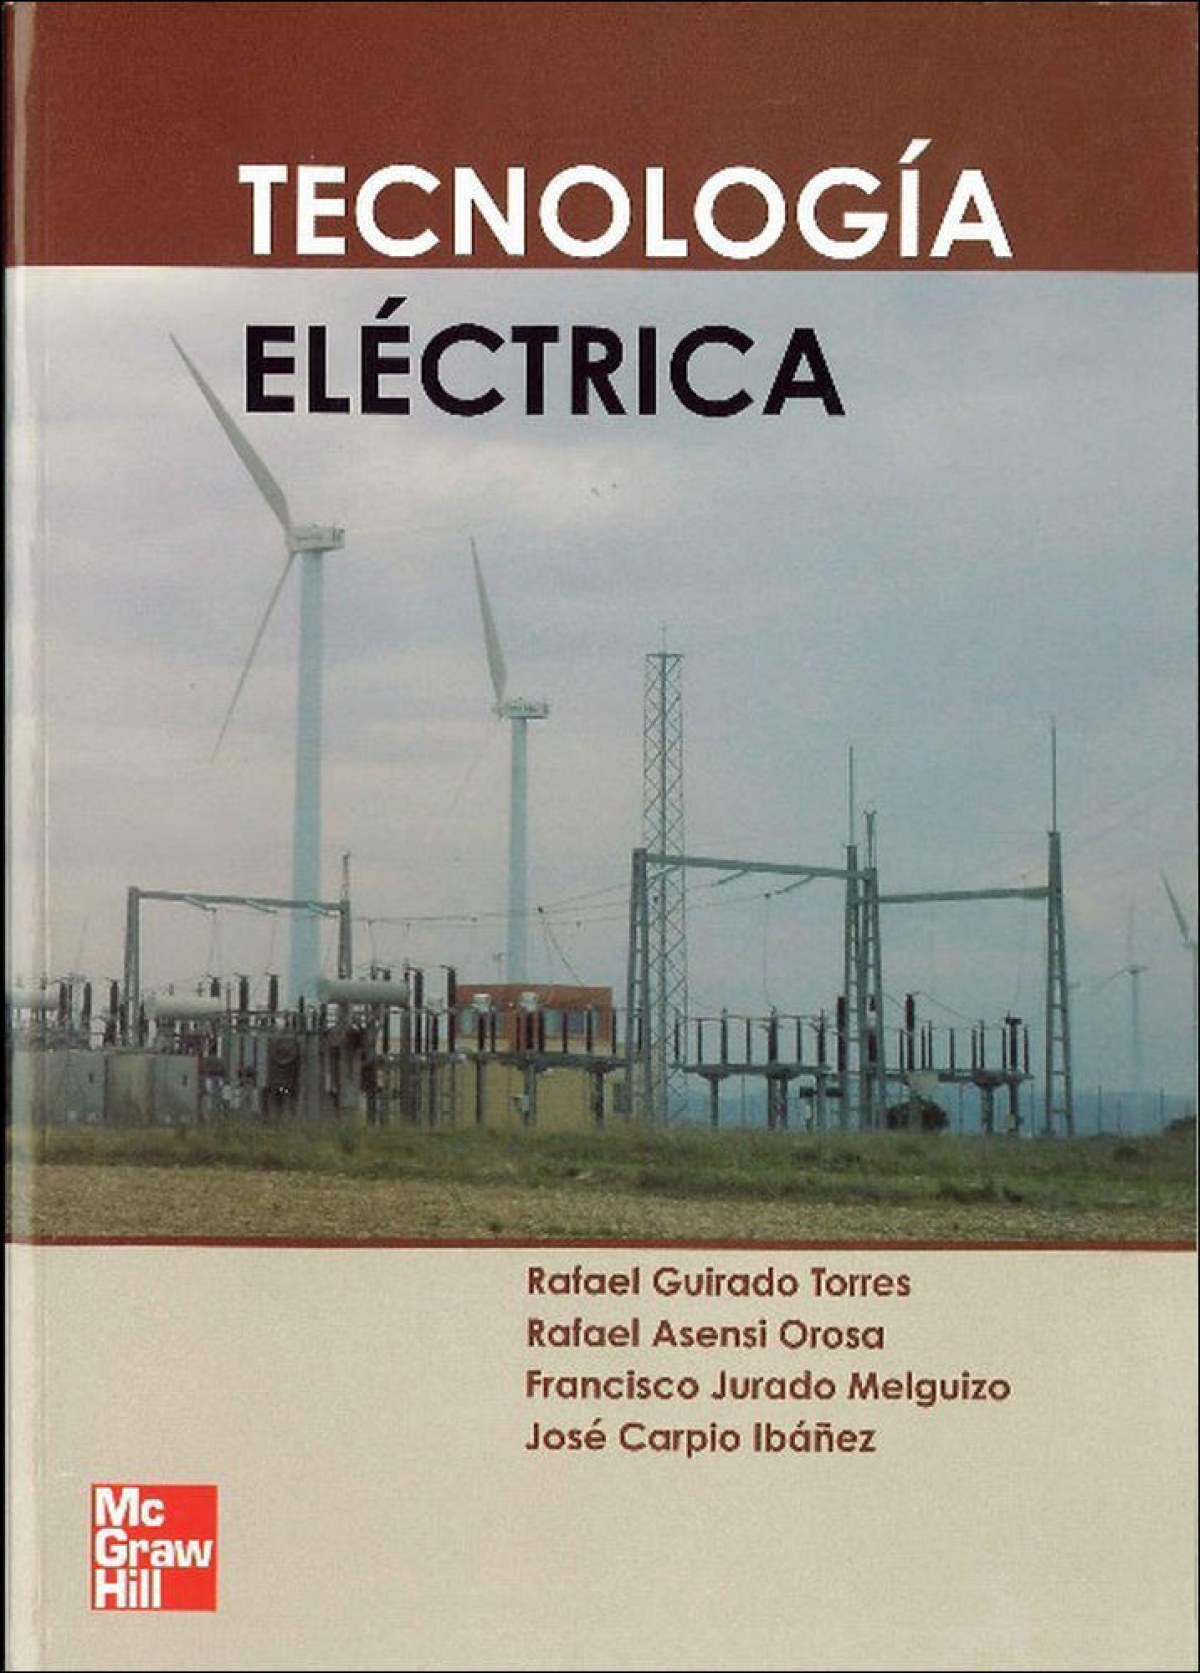 Tecnología Eléctrica - Guirado Torres Rafael/Asensi Orosa Rafael/Jurado Melguizo Francisco/Carpio Ibañez Jose